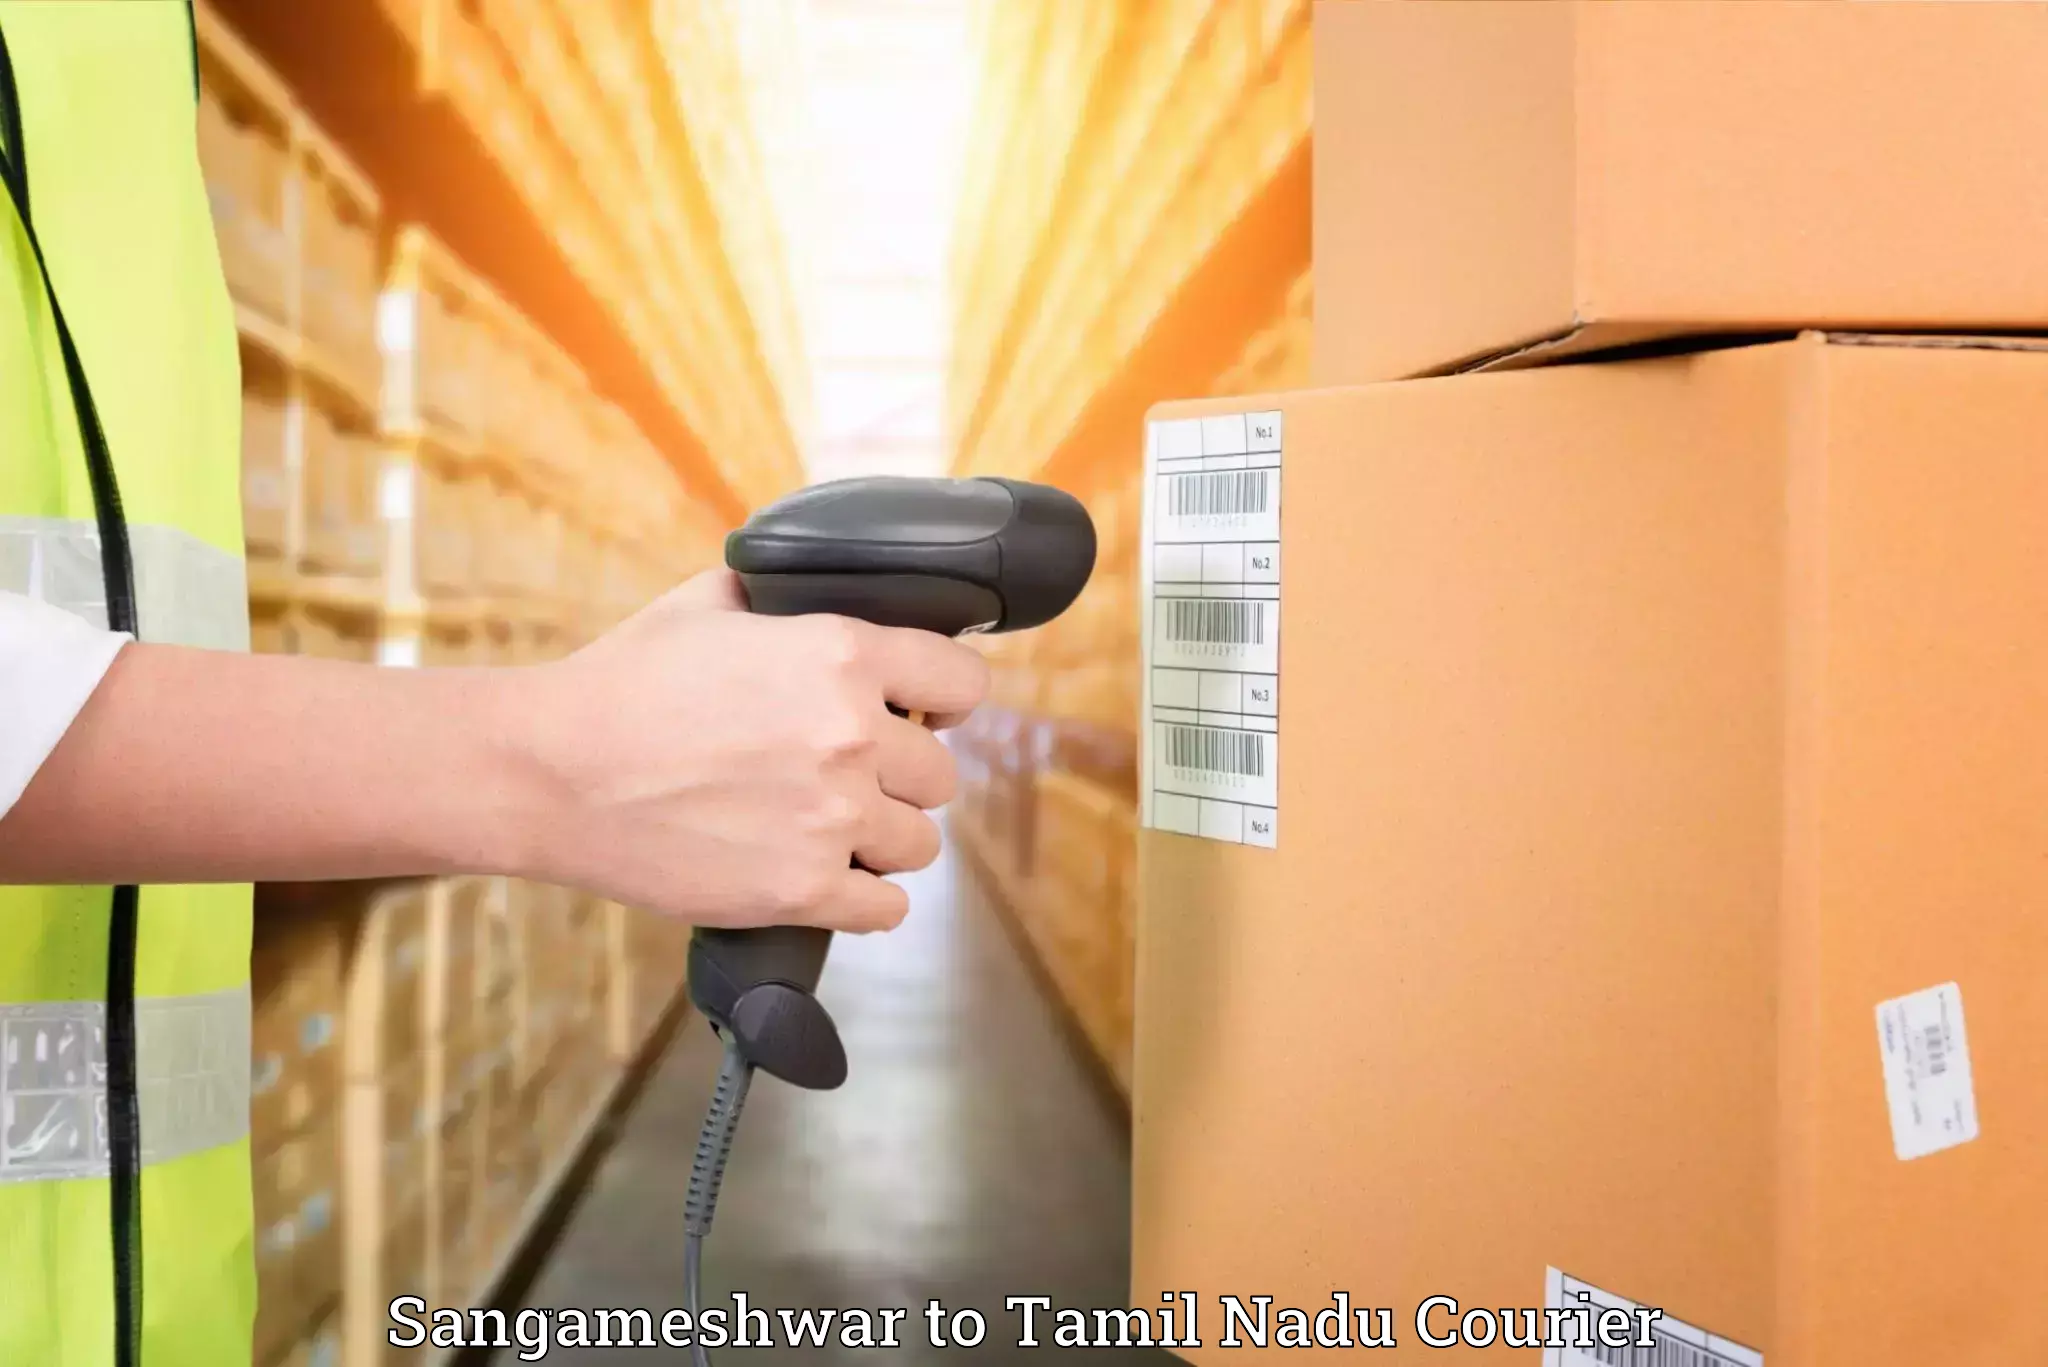 Furniture delivery service Sangameshwar to Tamil Nadu